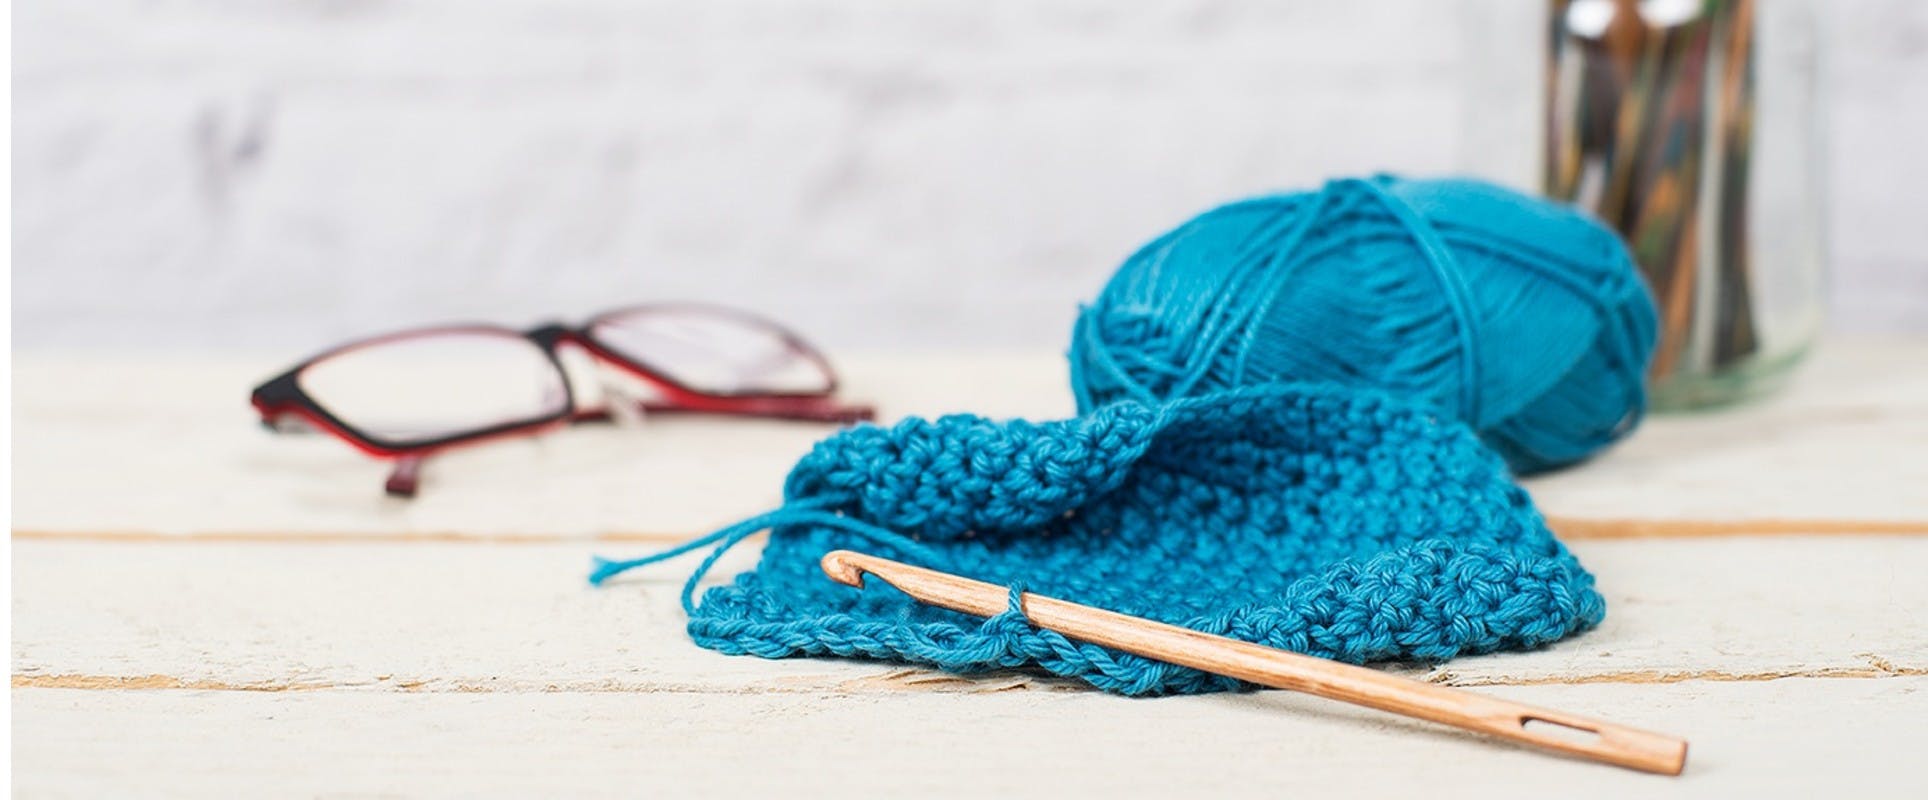 The Best Ergonomic Crochet Hooks & Crochet Hook Sets for Arthritis For Sore  Hands - Easy Crochet Patterns